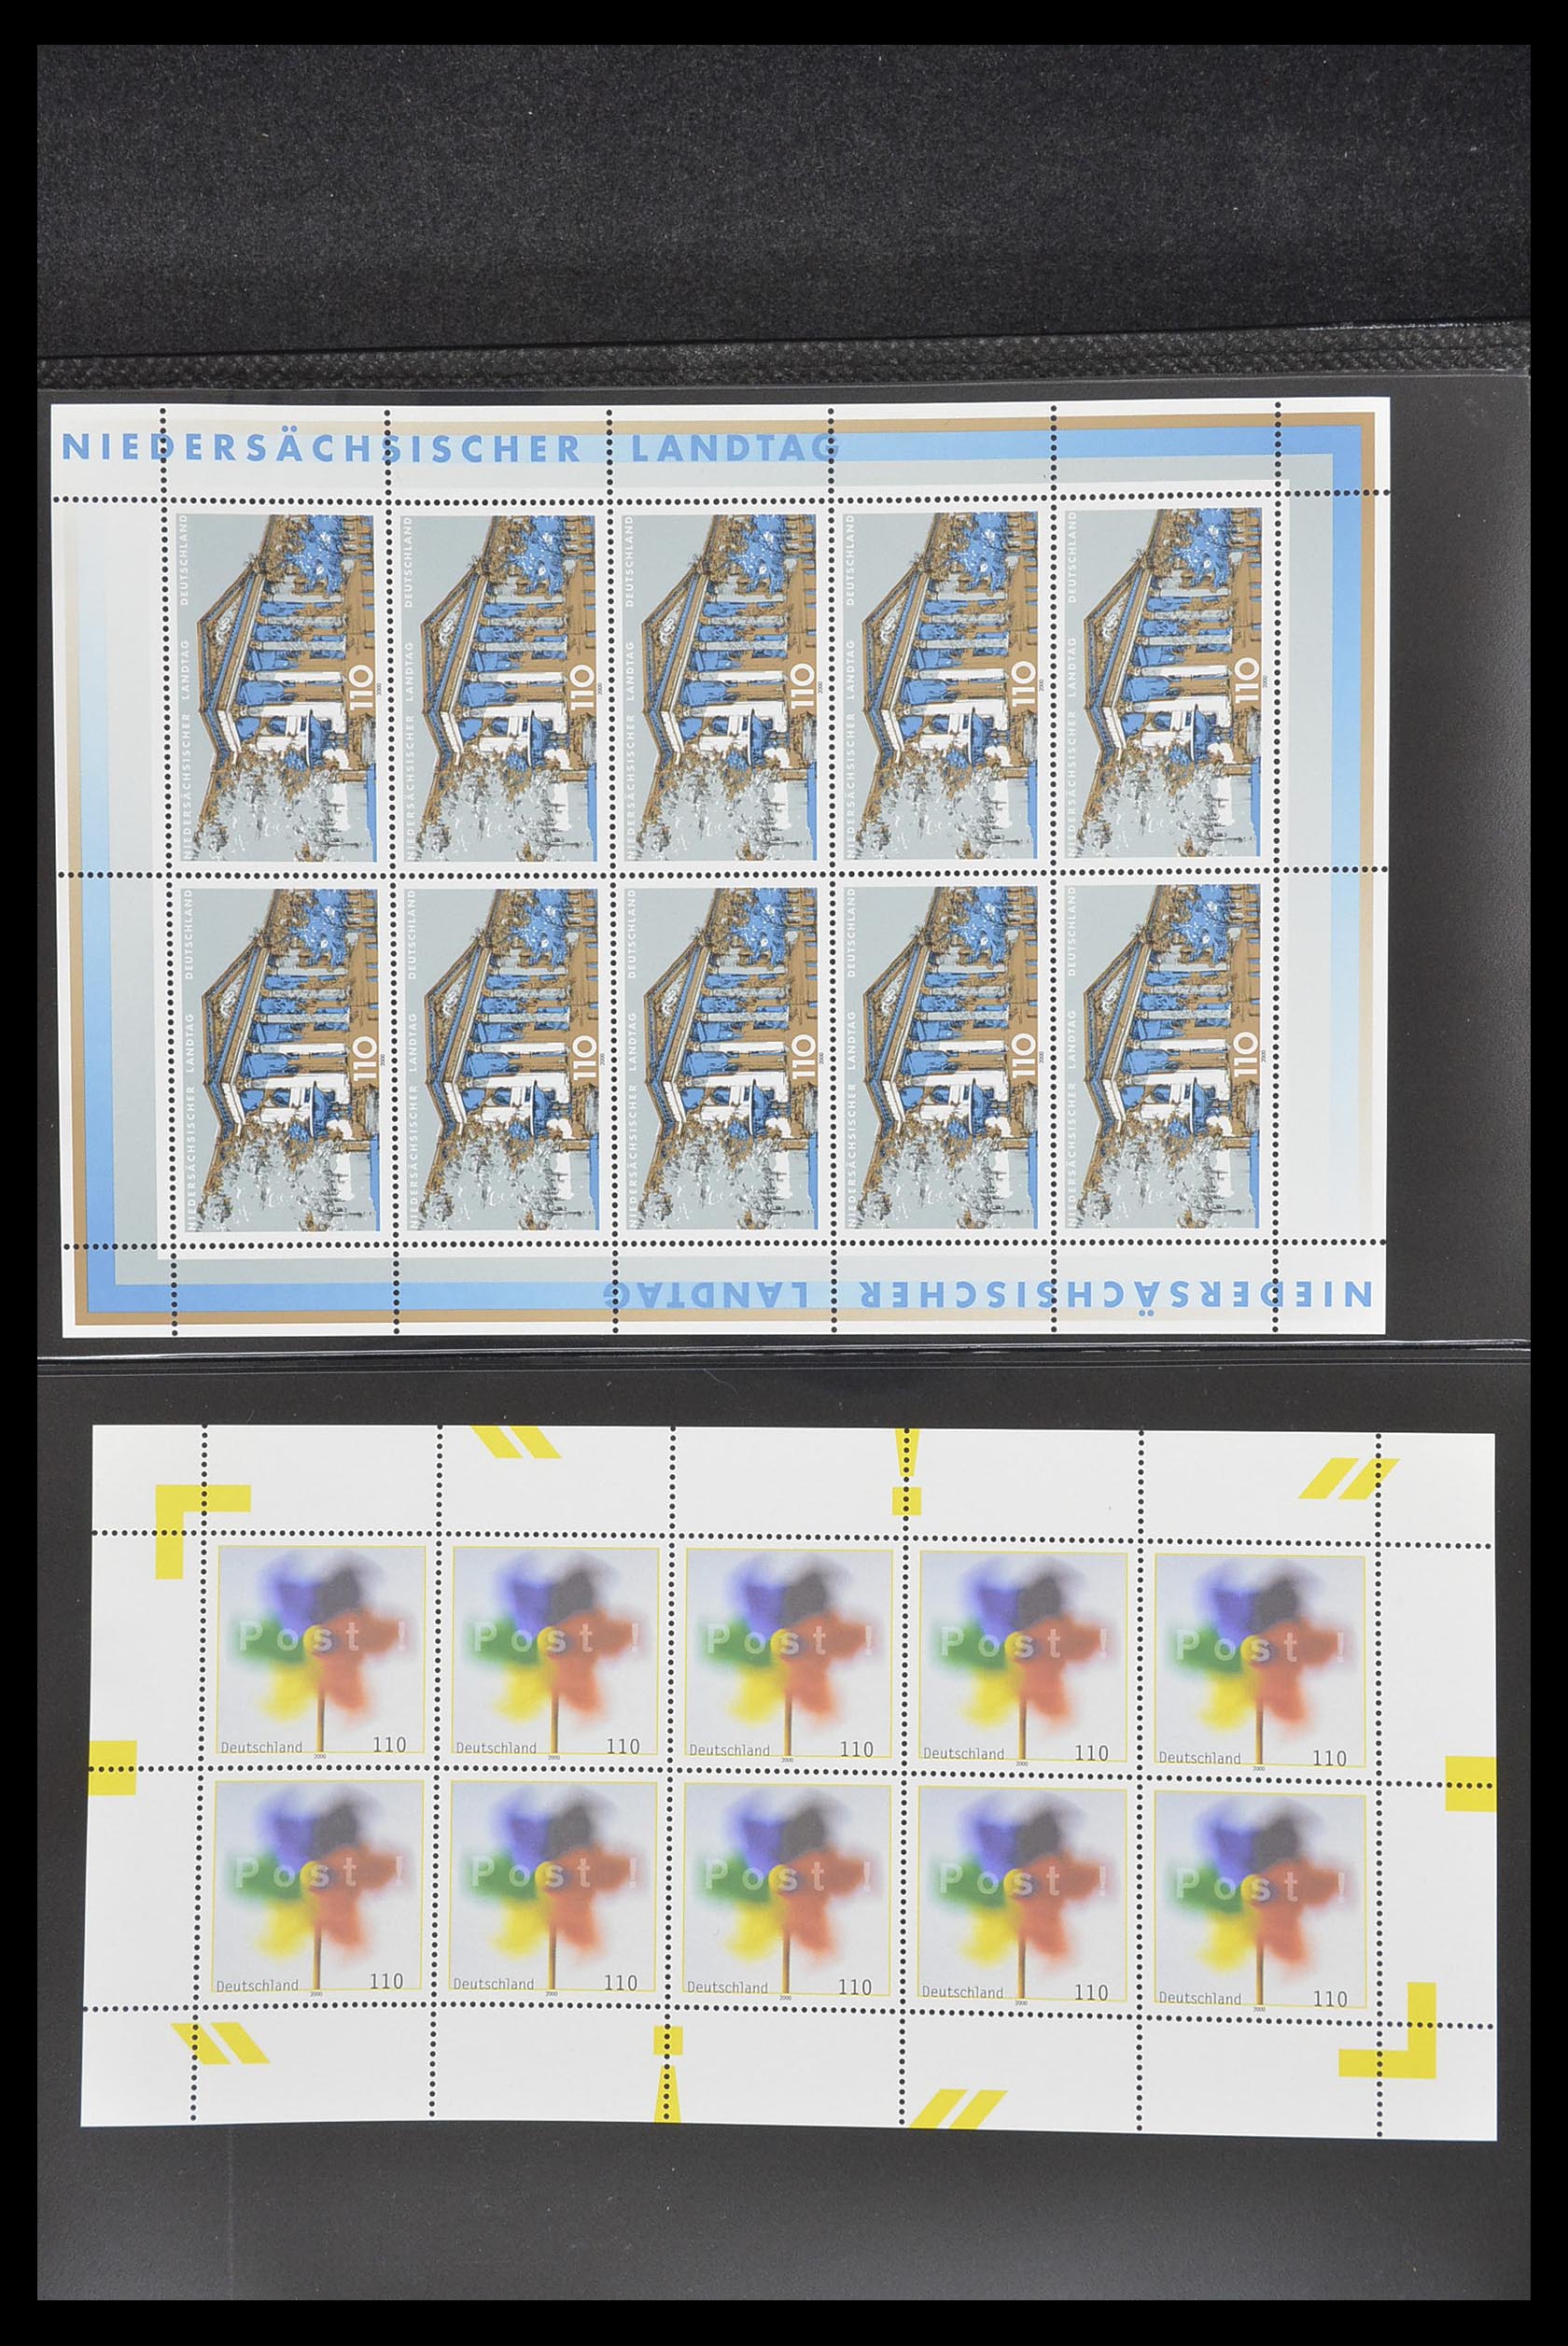 33936 154 - Stamp collection 33936 Bundespost kleinbogen 1994-2000.